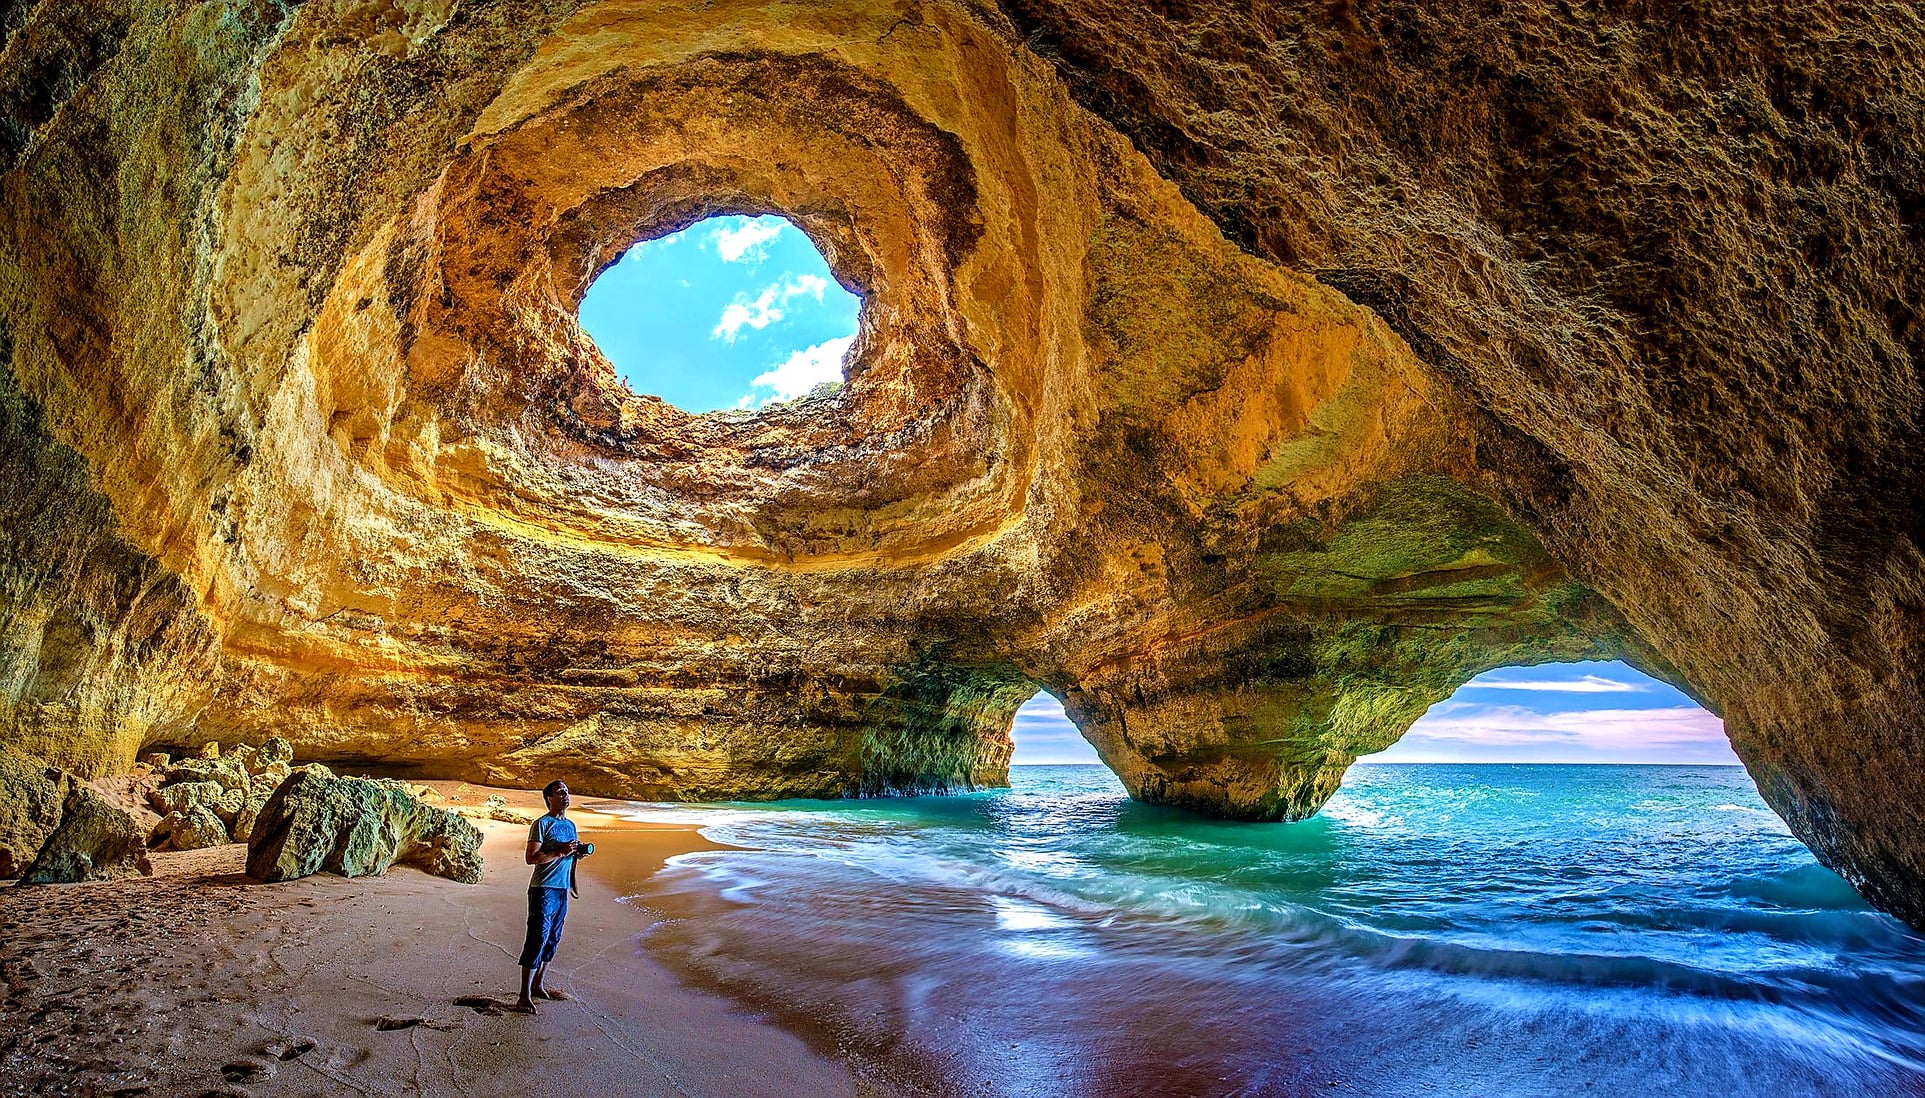 葡萄牙阿尔加维世界上最惊艳的海滩之旅| 阿尔加维| 葡萄牙| 海滩| 景观| 风景| 大自然| 旅游| 度假沙滩| 希望之声